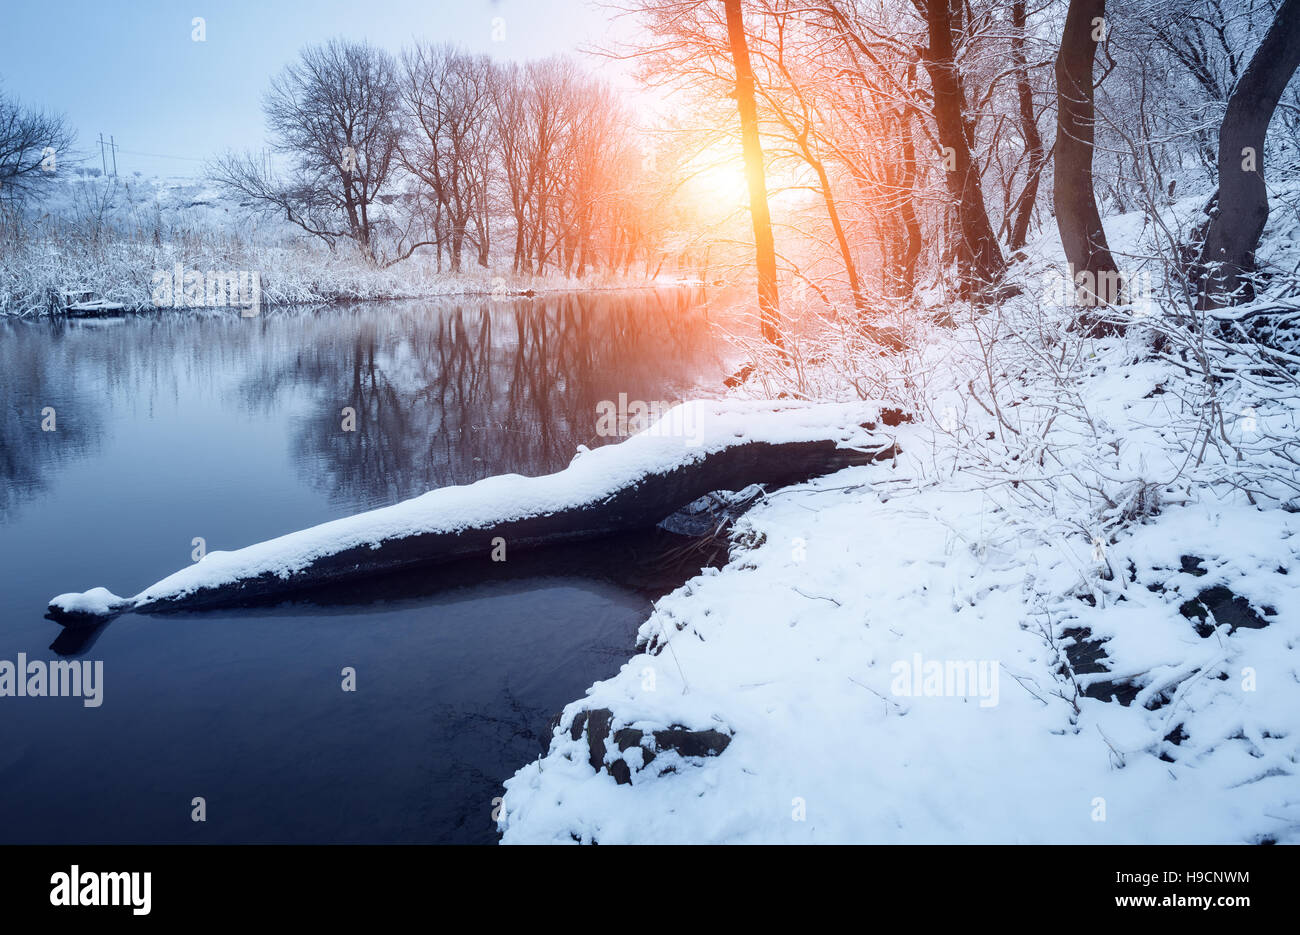 Forêt d'hiver sur la rivière au coucher du soleil. Paysage coloré avec snowy trees, belle rivière gelée avec la réflexion dans l'eau Banque D'Images